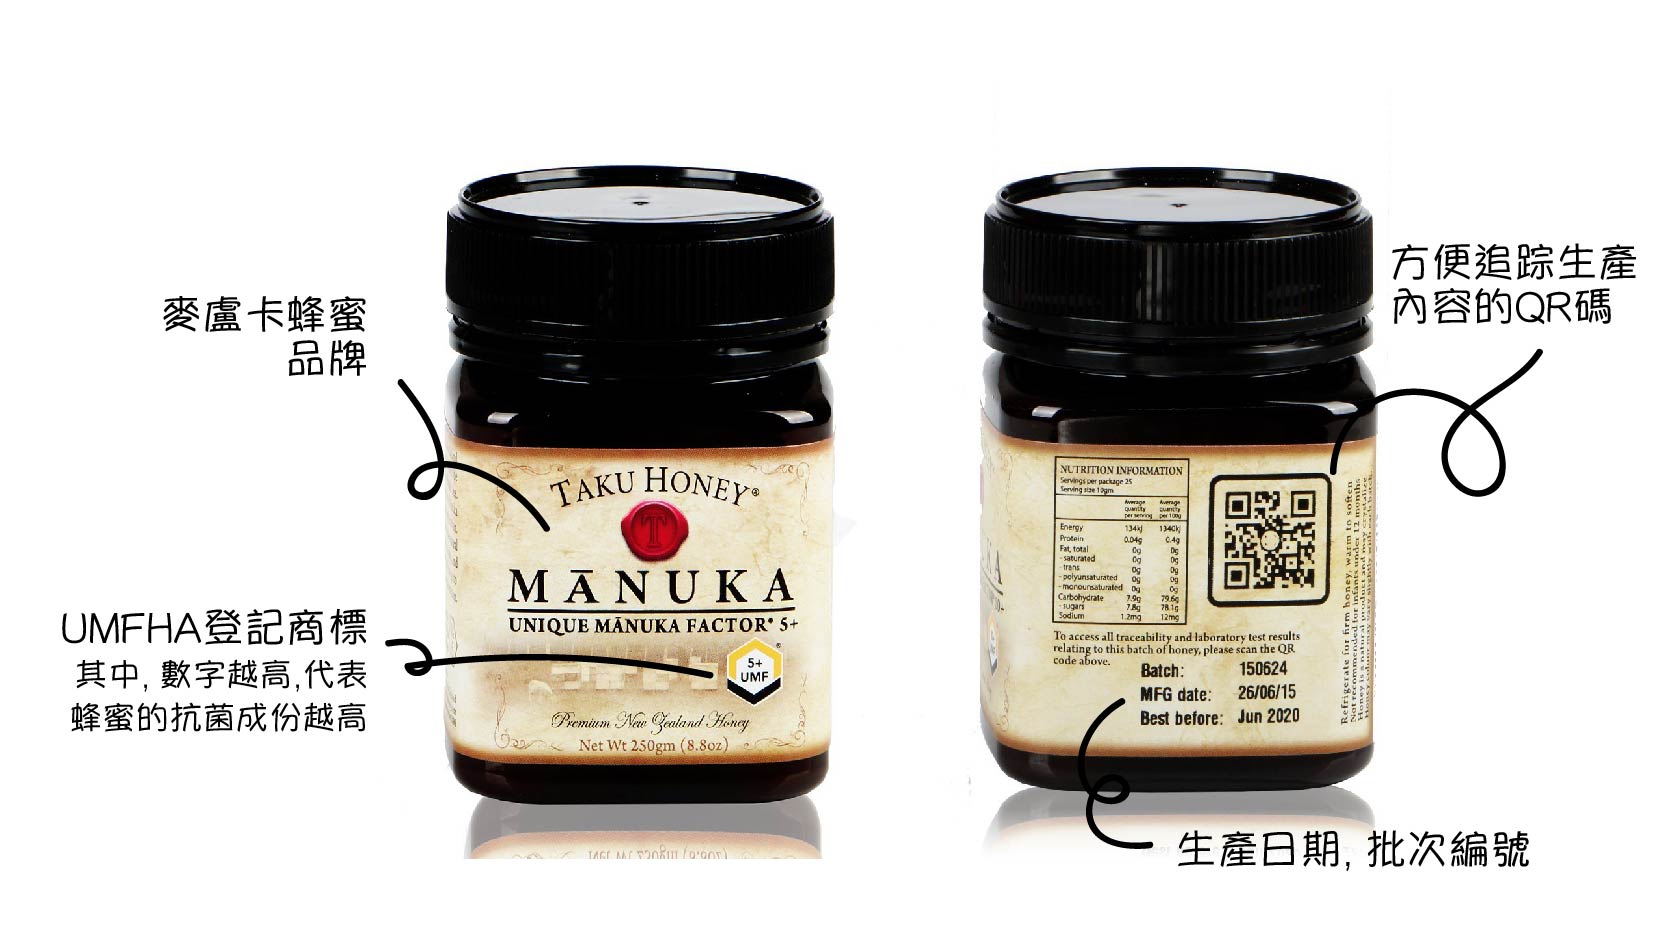 UMF Registered Manuka Honey UMFHA 麥盧卡蜂蜜協會註冊商標